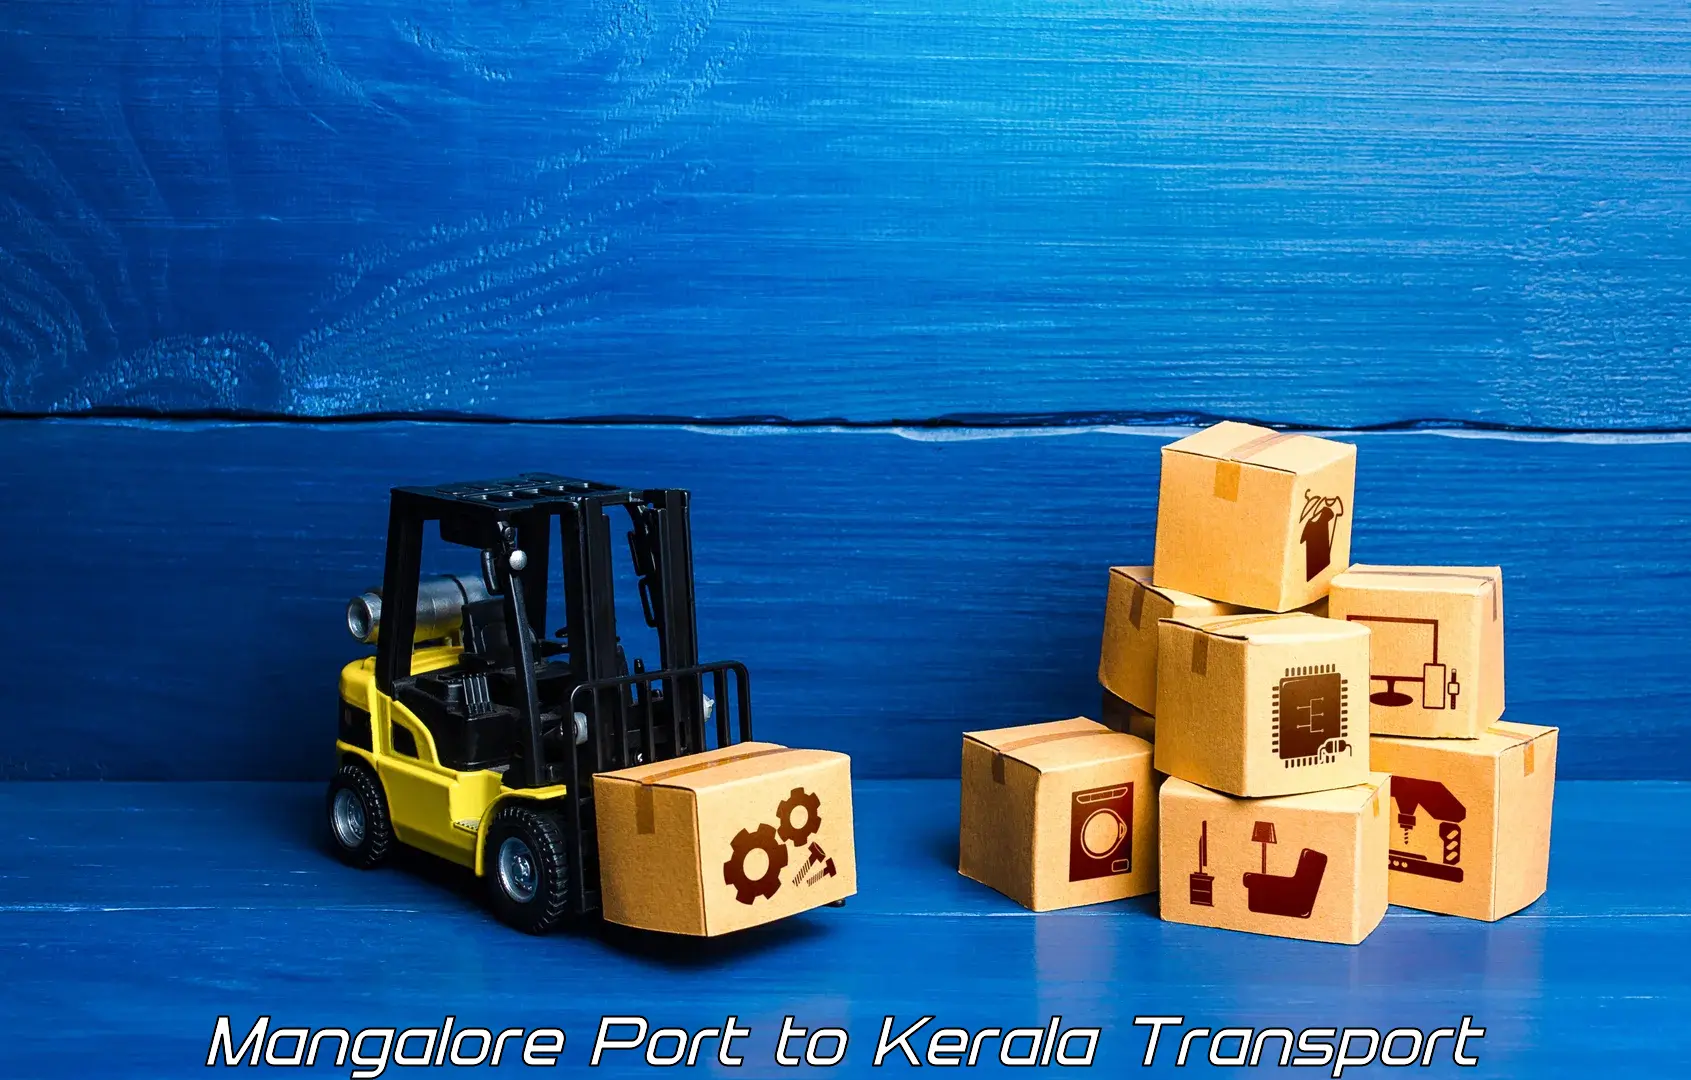 Delivery service Mangalore Port to Perambra